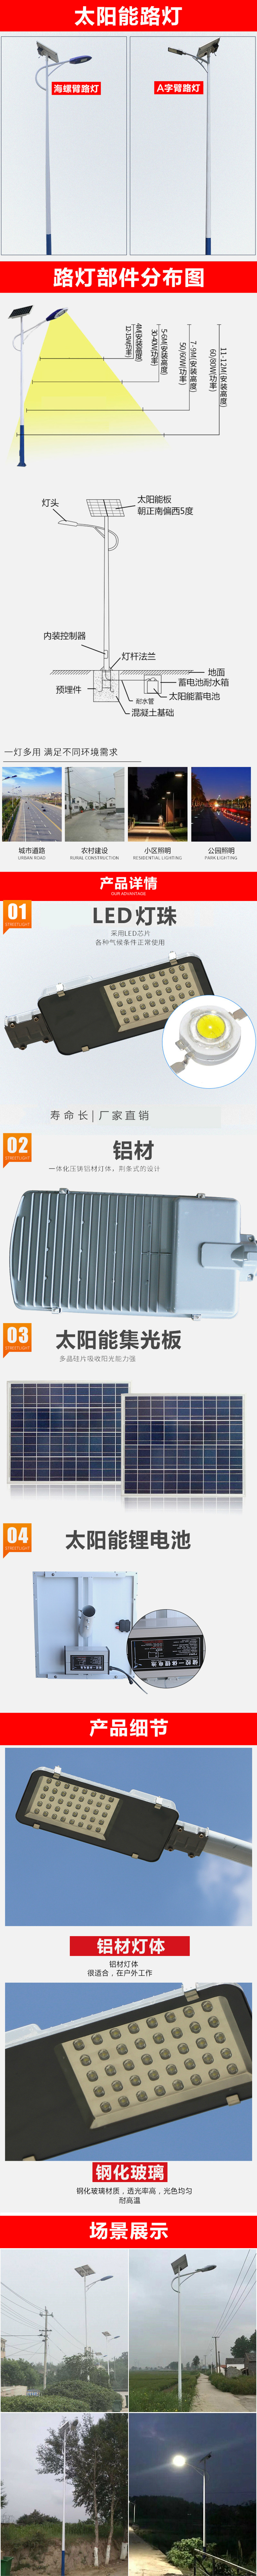 厂家供应 6米太阳能路灯 新农村建设太阳能路灯 led路灯 免维护锂电池路灯示例图14